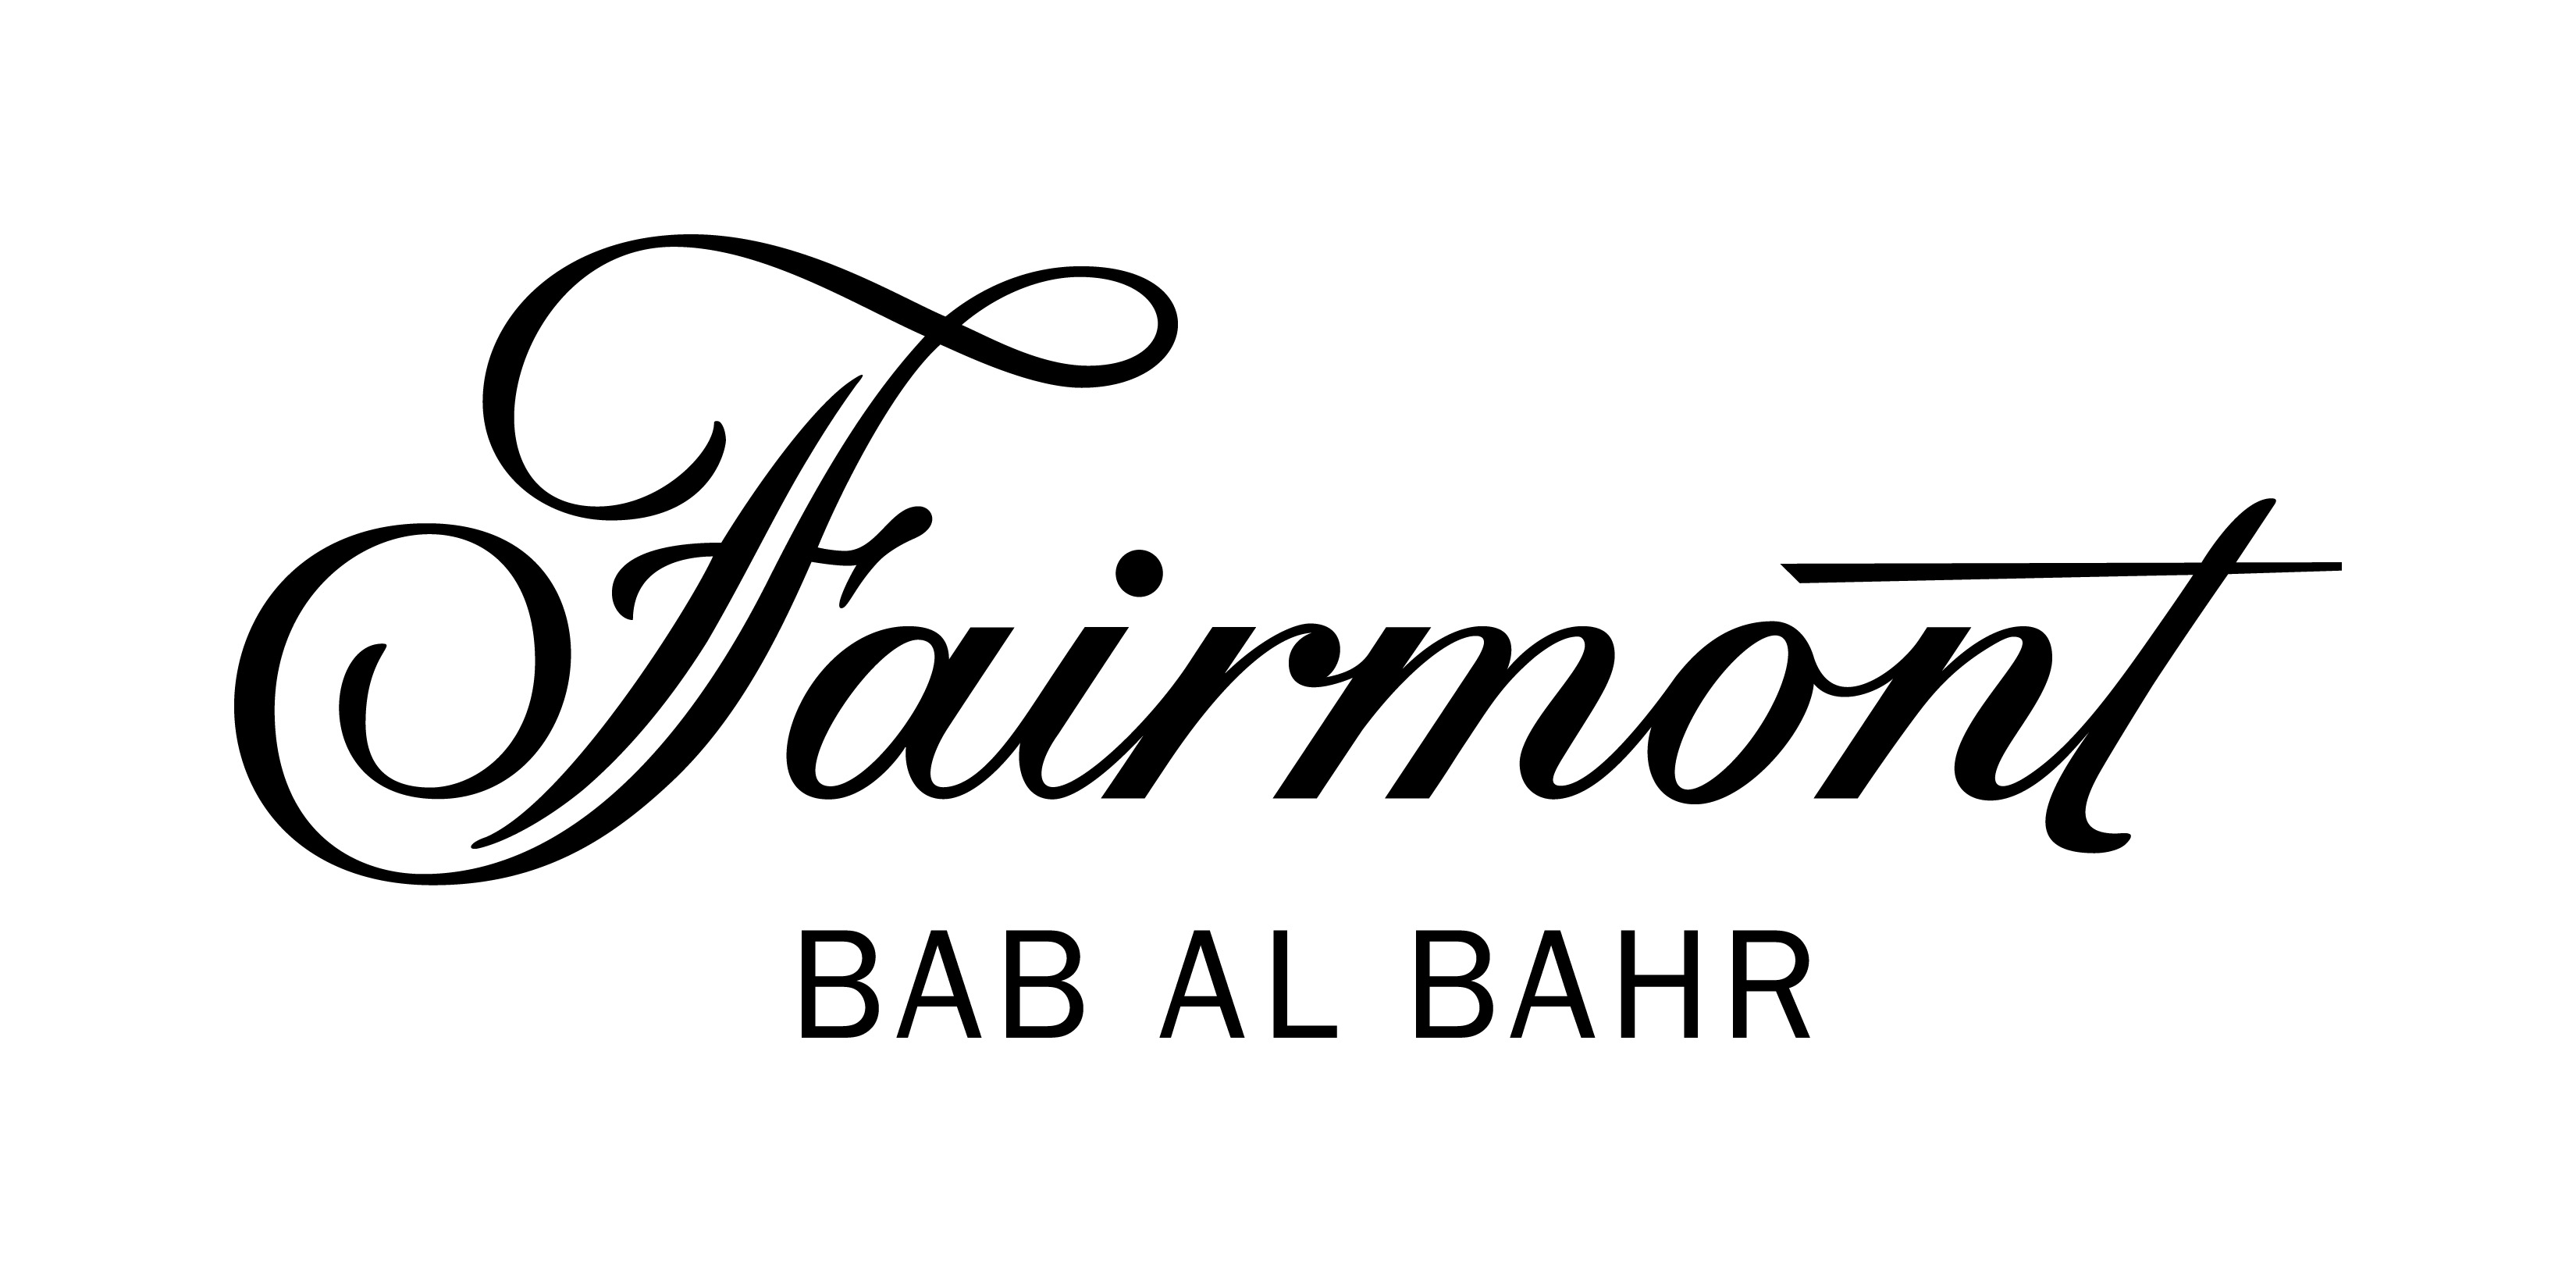 Fairmont Bab Al Bahr